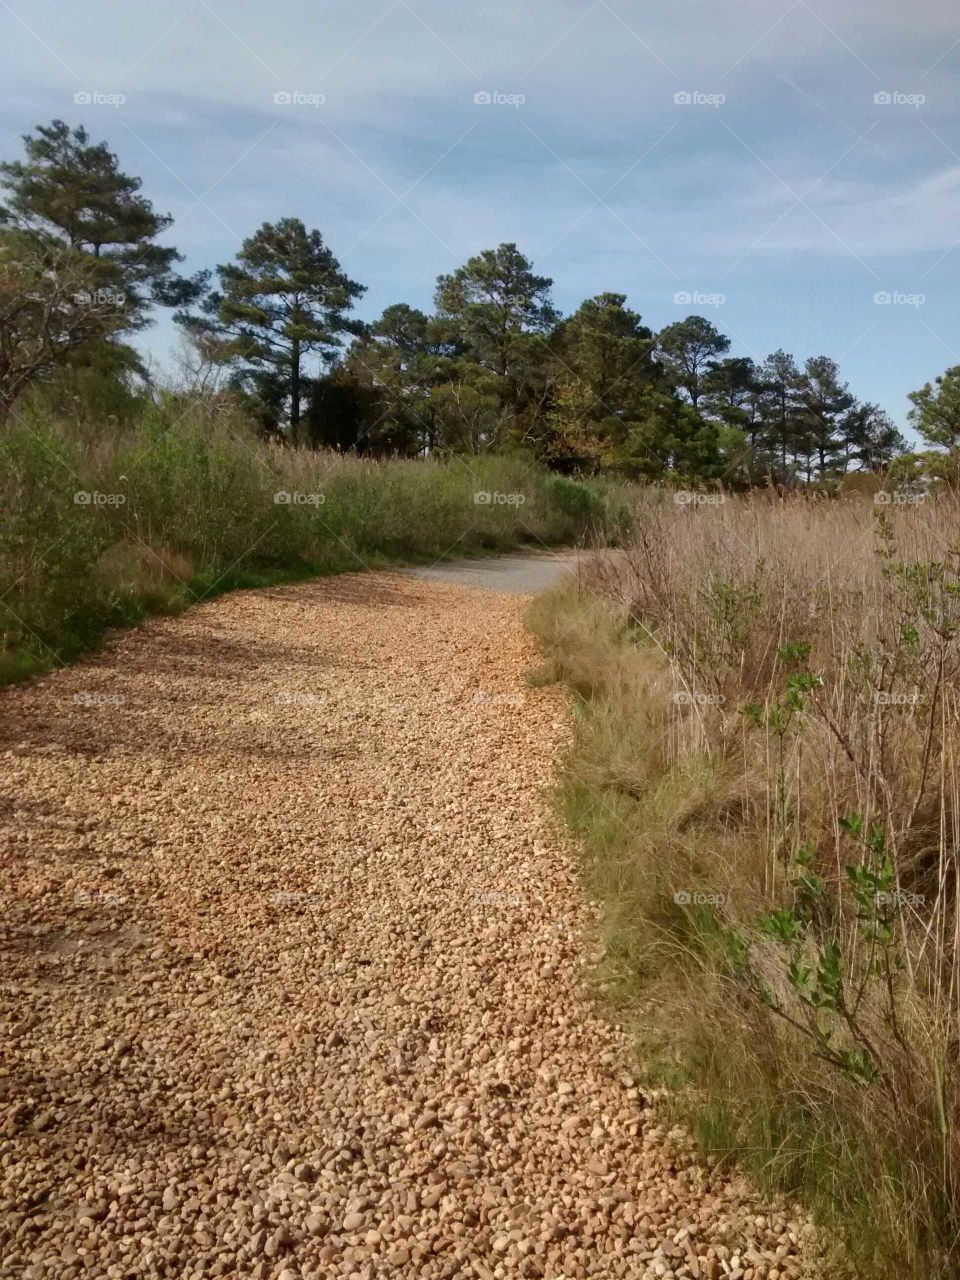 Pebble path